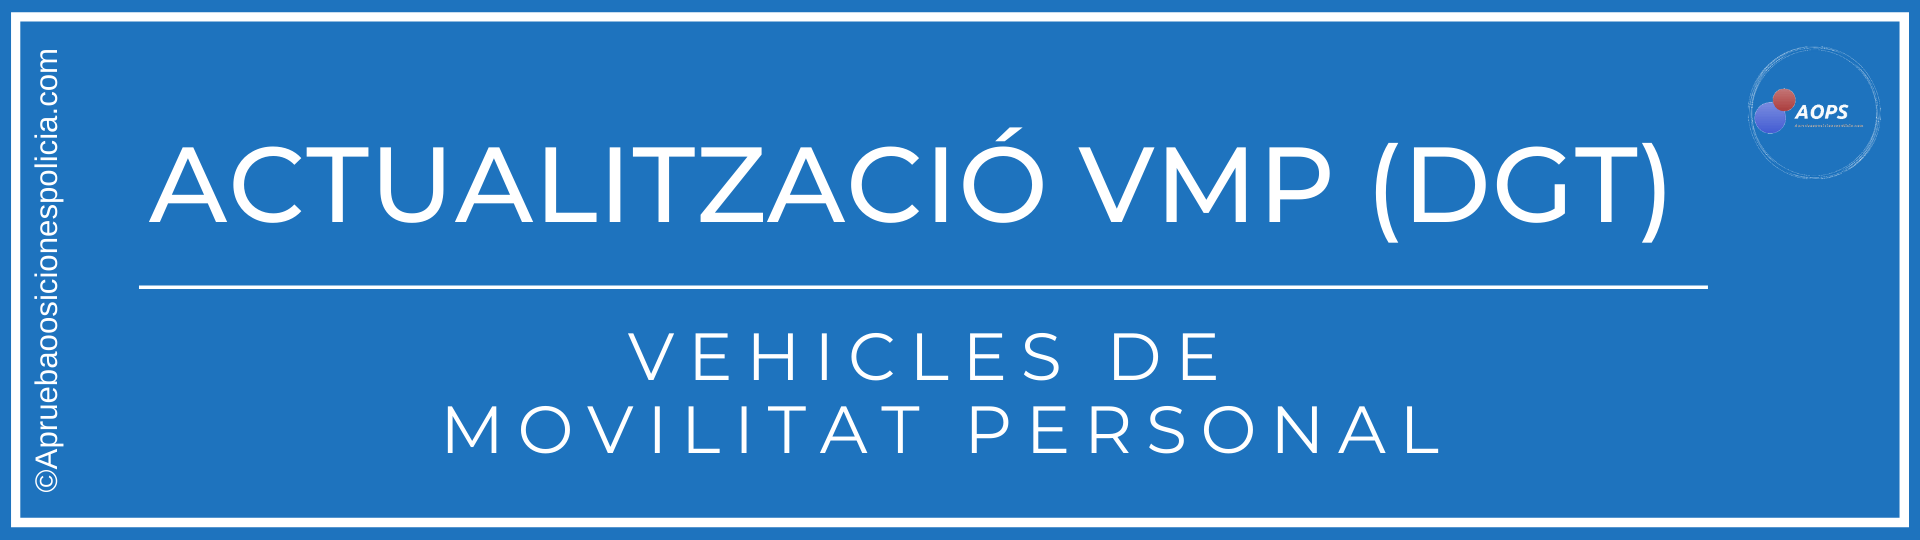 VMP vehículos de movilidad personal tema